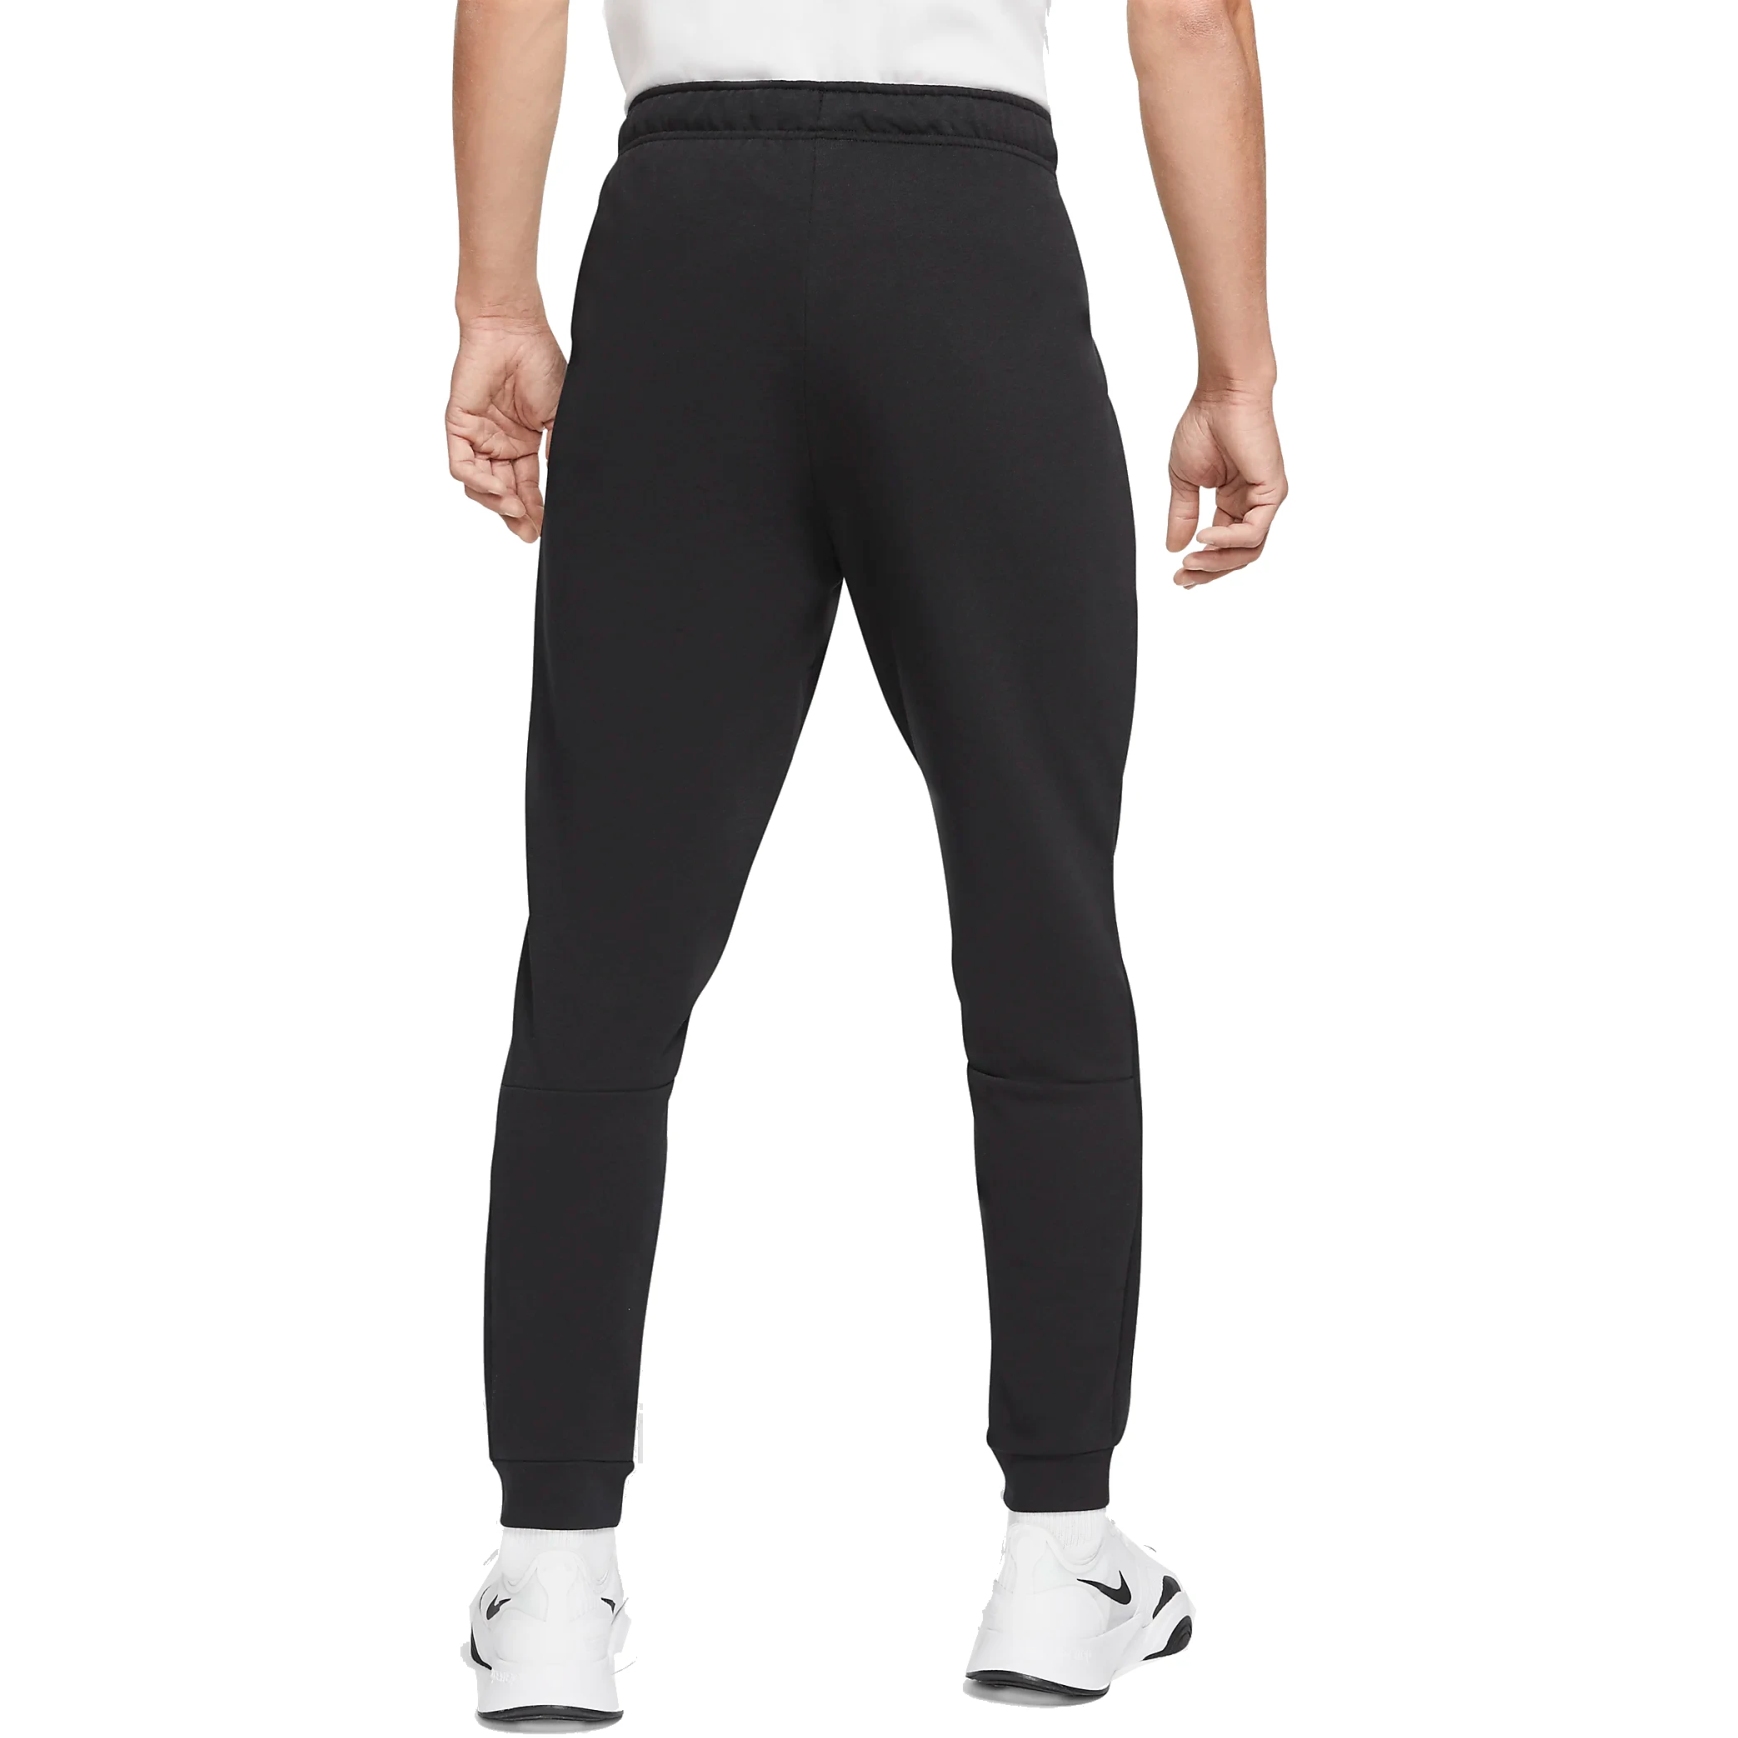 Nike Dri-fit Flex Training Pants | Pants | Clothing & Accessories | Shop  The Exchange